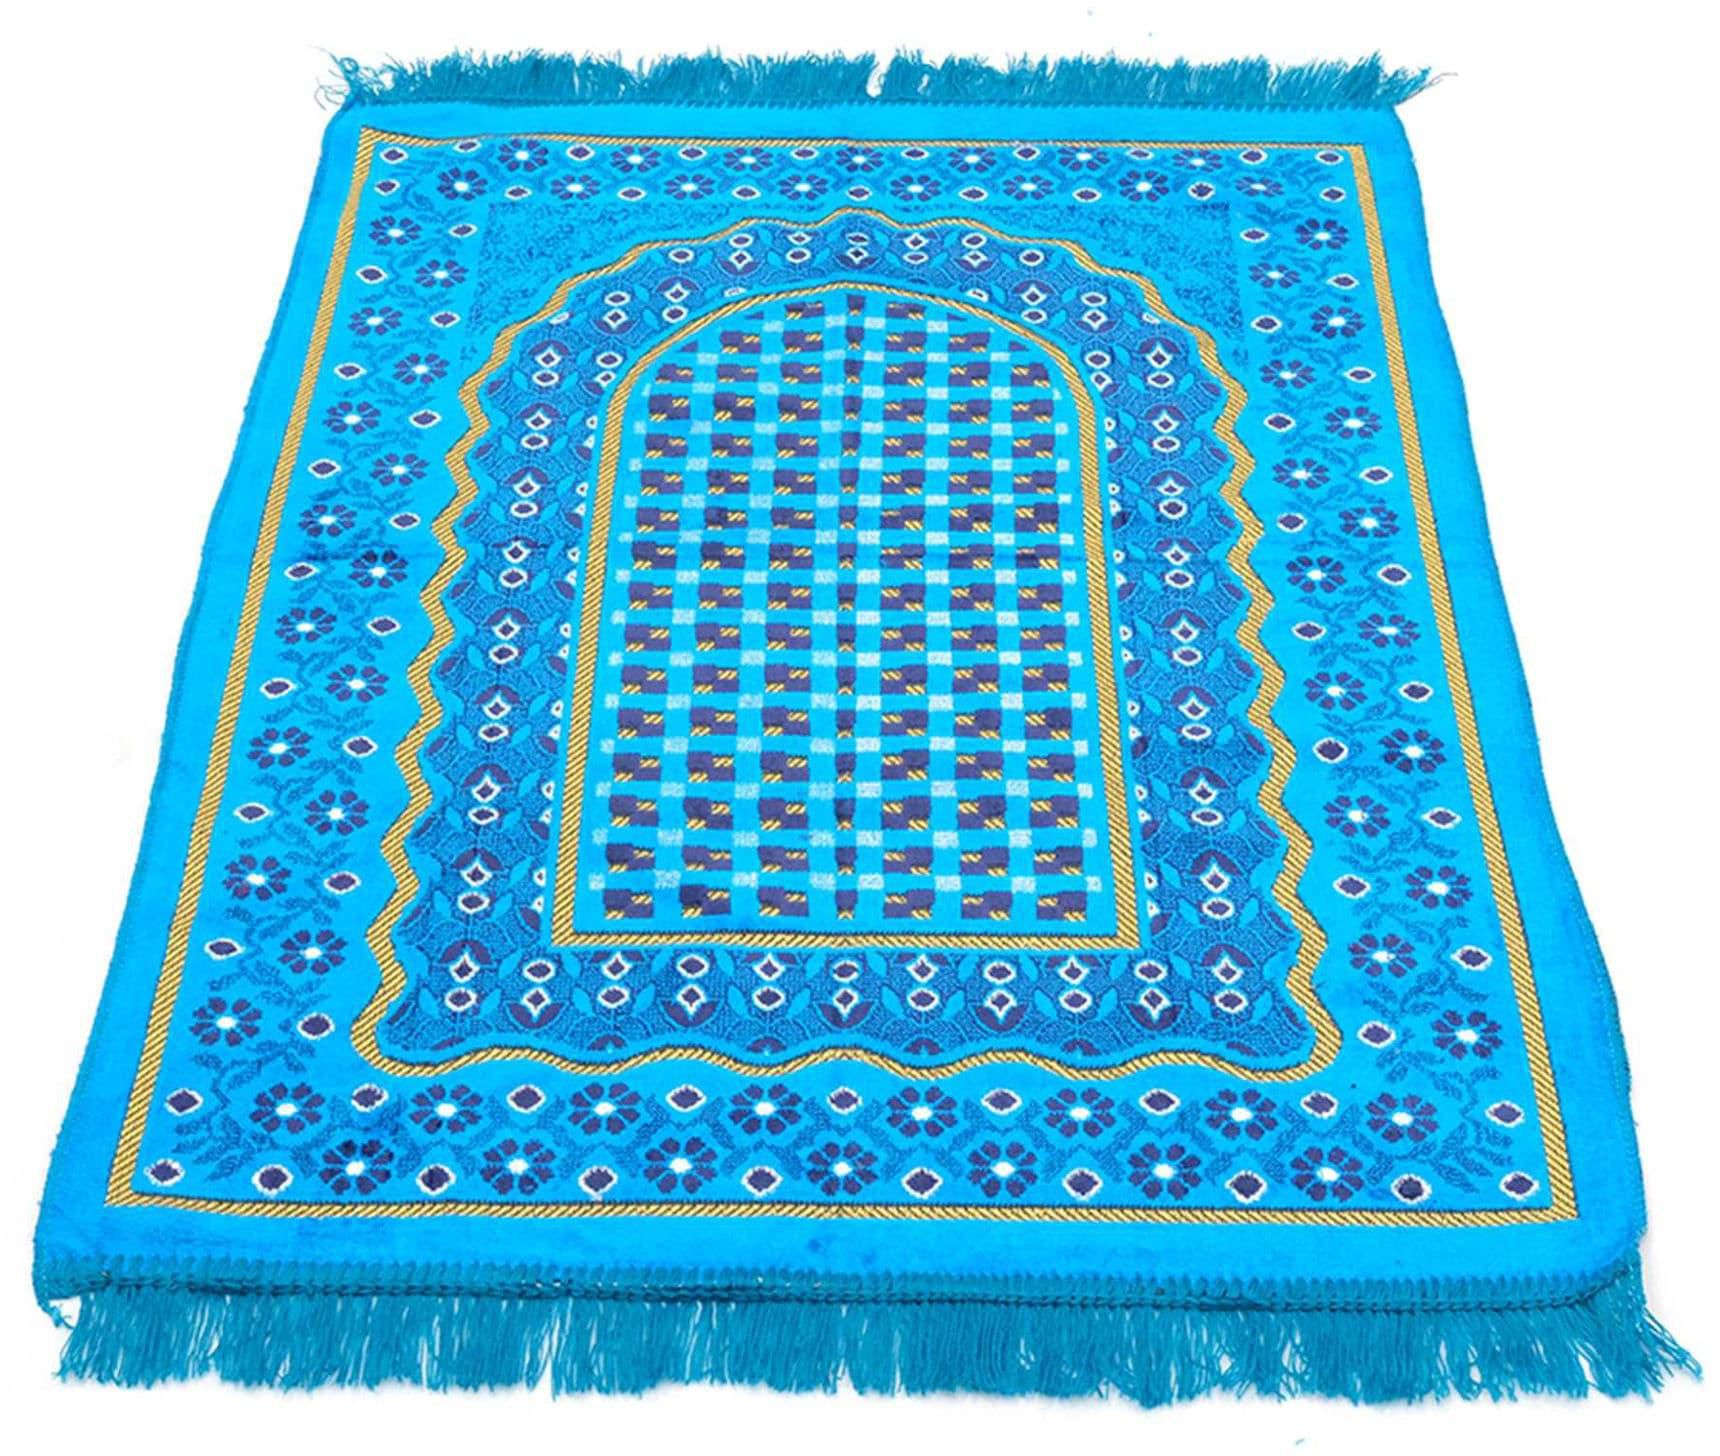 Safi Window Design Prayer Mat, Blue & Navy Blue, 70 x 110cm, 500g